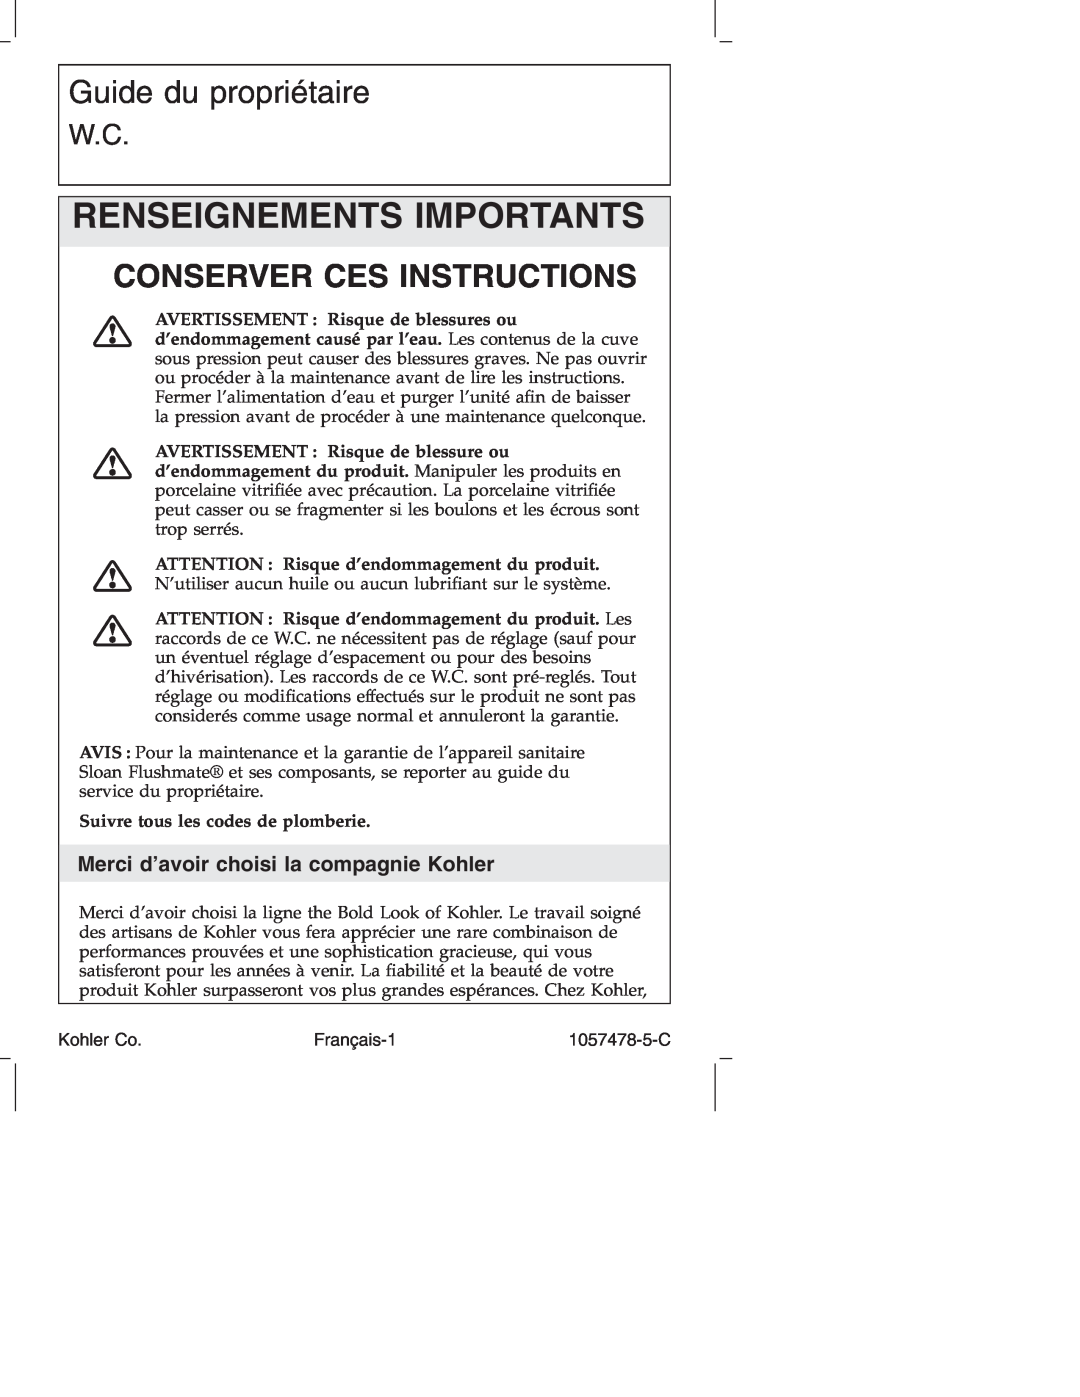 Kohler K-3393 manual Renseignements Importants, Guide du propriétaire, Conserver Ces Instructions 